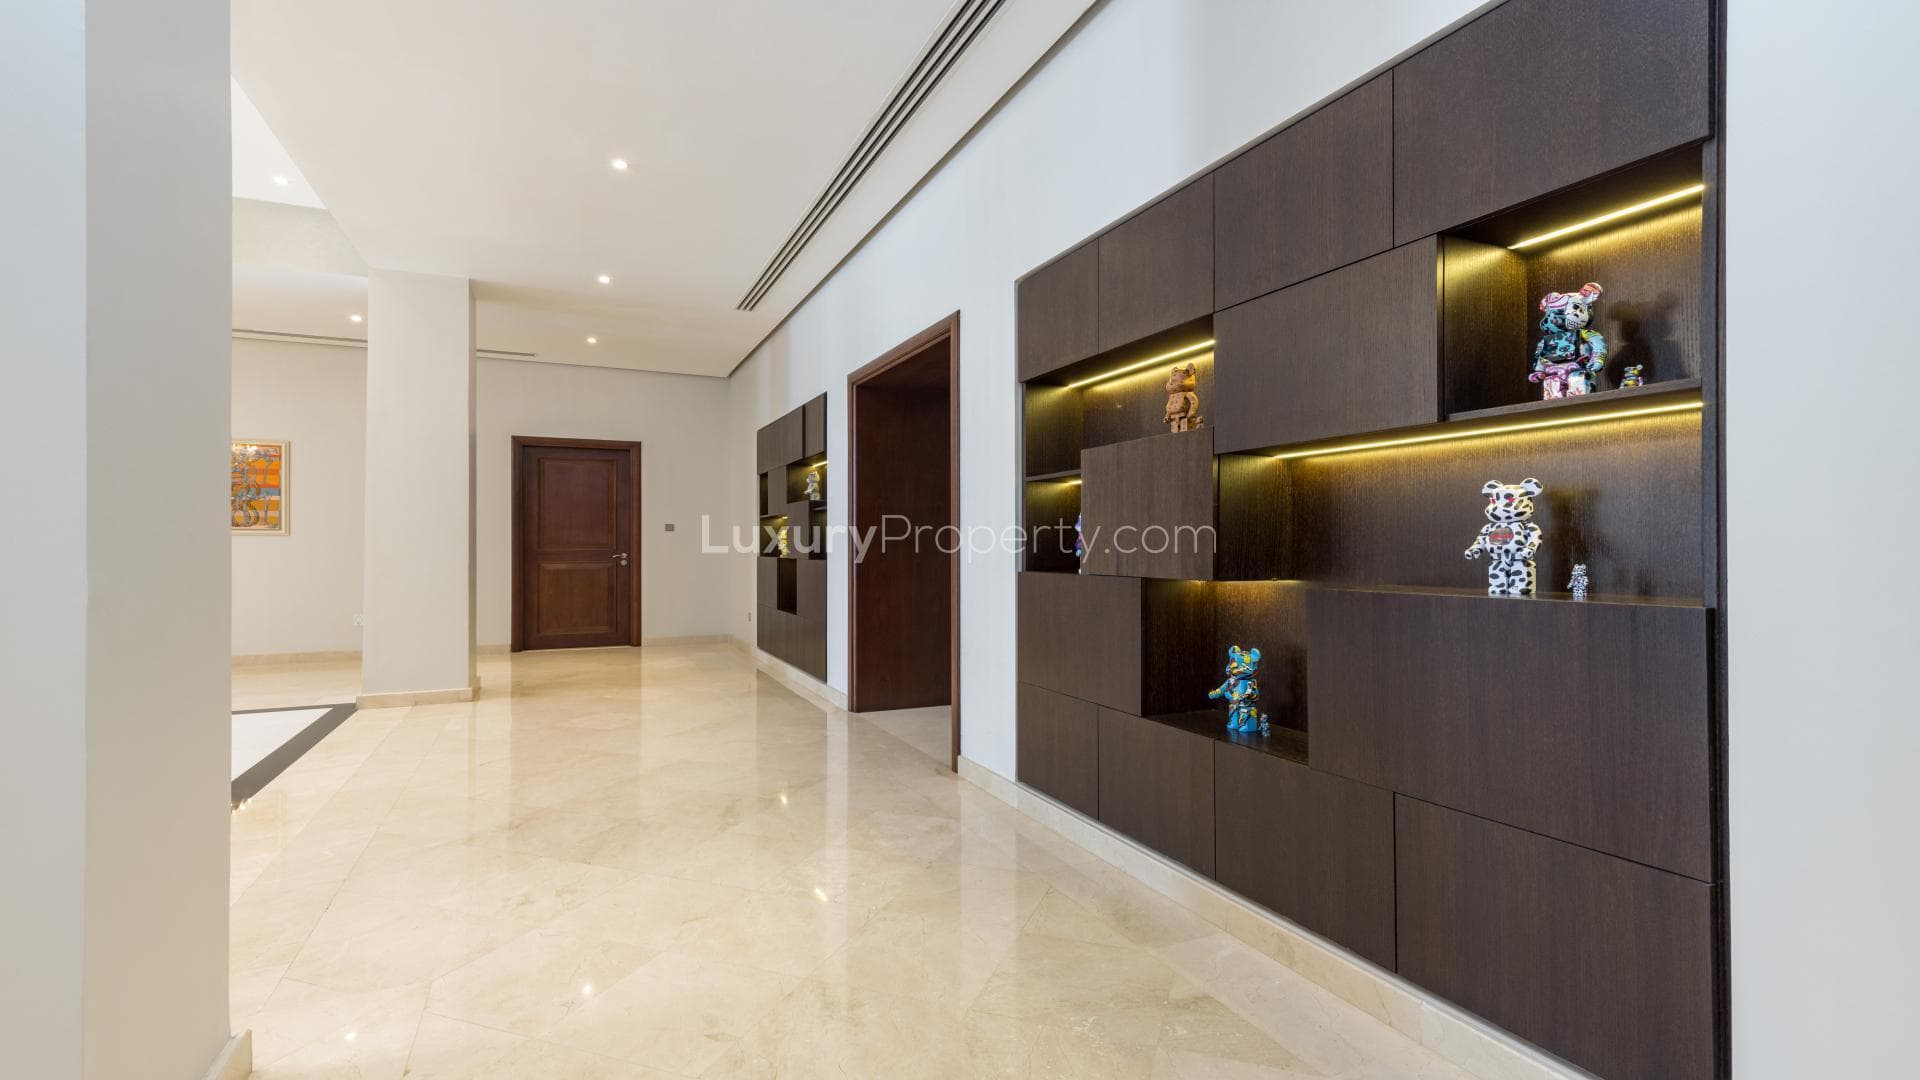 4 Bedroom Villa For Rent Emirates Hills Villas Lp20756 13fe0e8975d4680.jpg